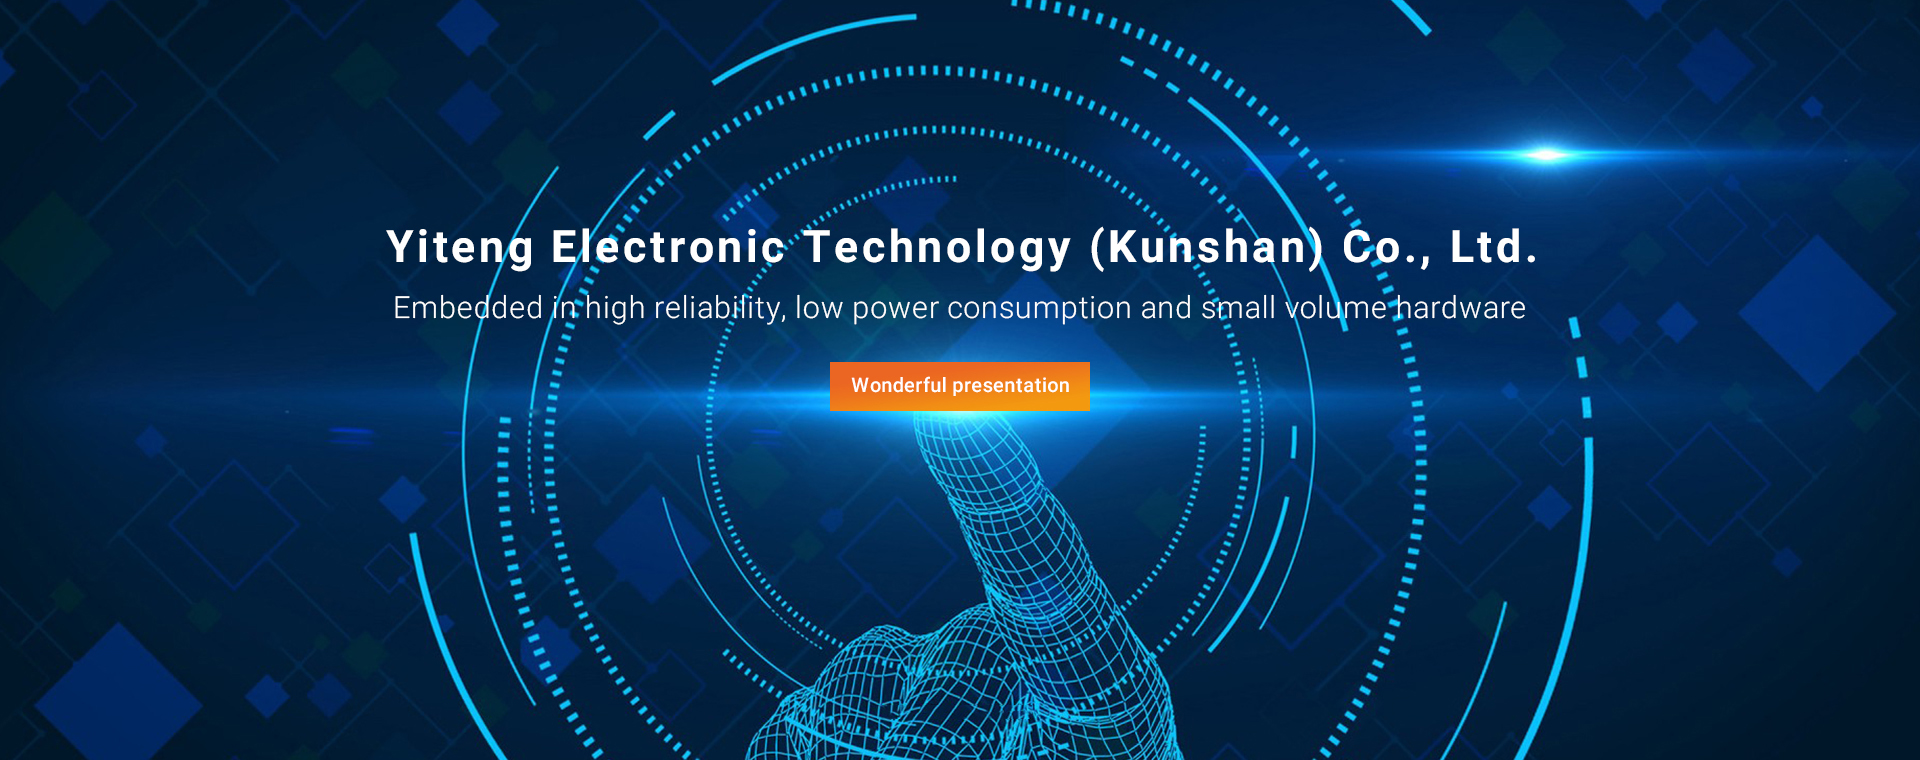 YI Teng Electronic Technology (Kunshan) Co., Ltd